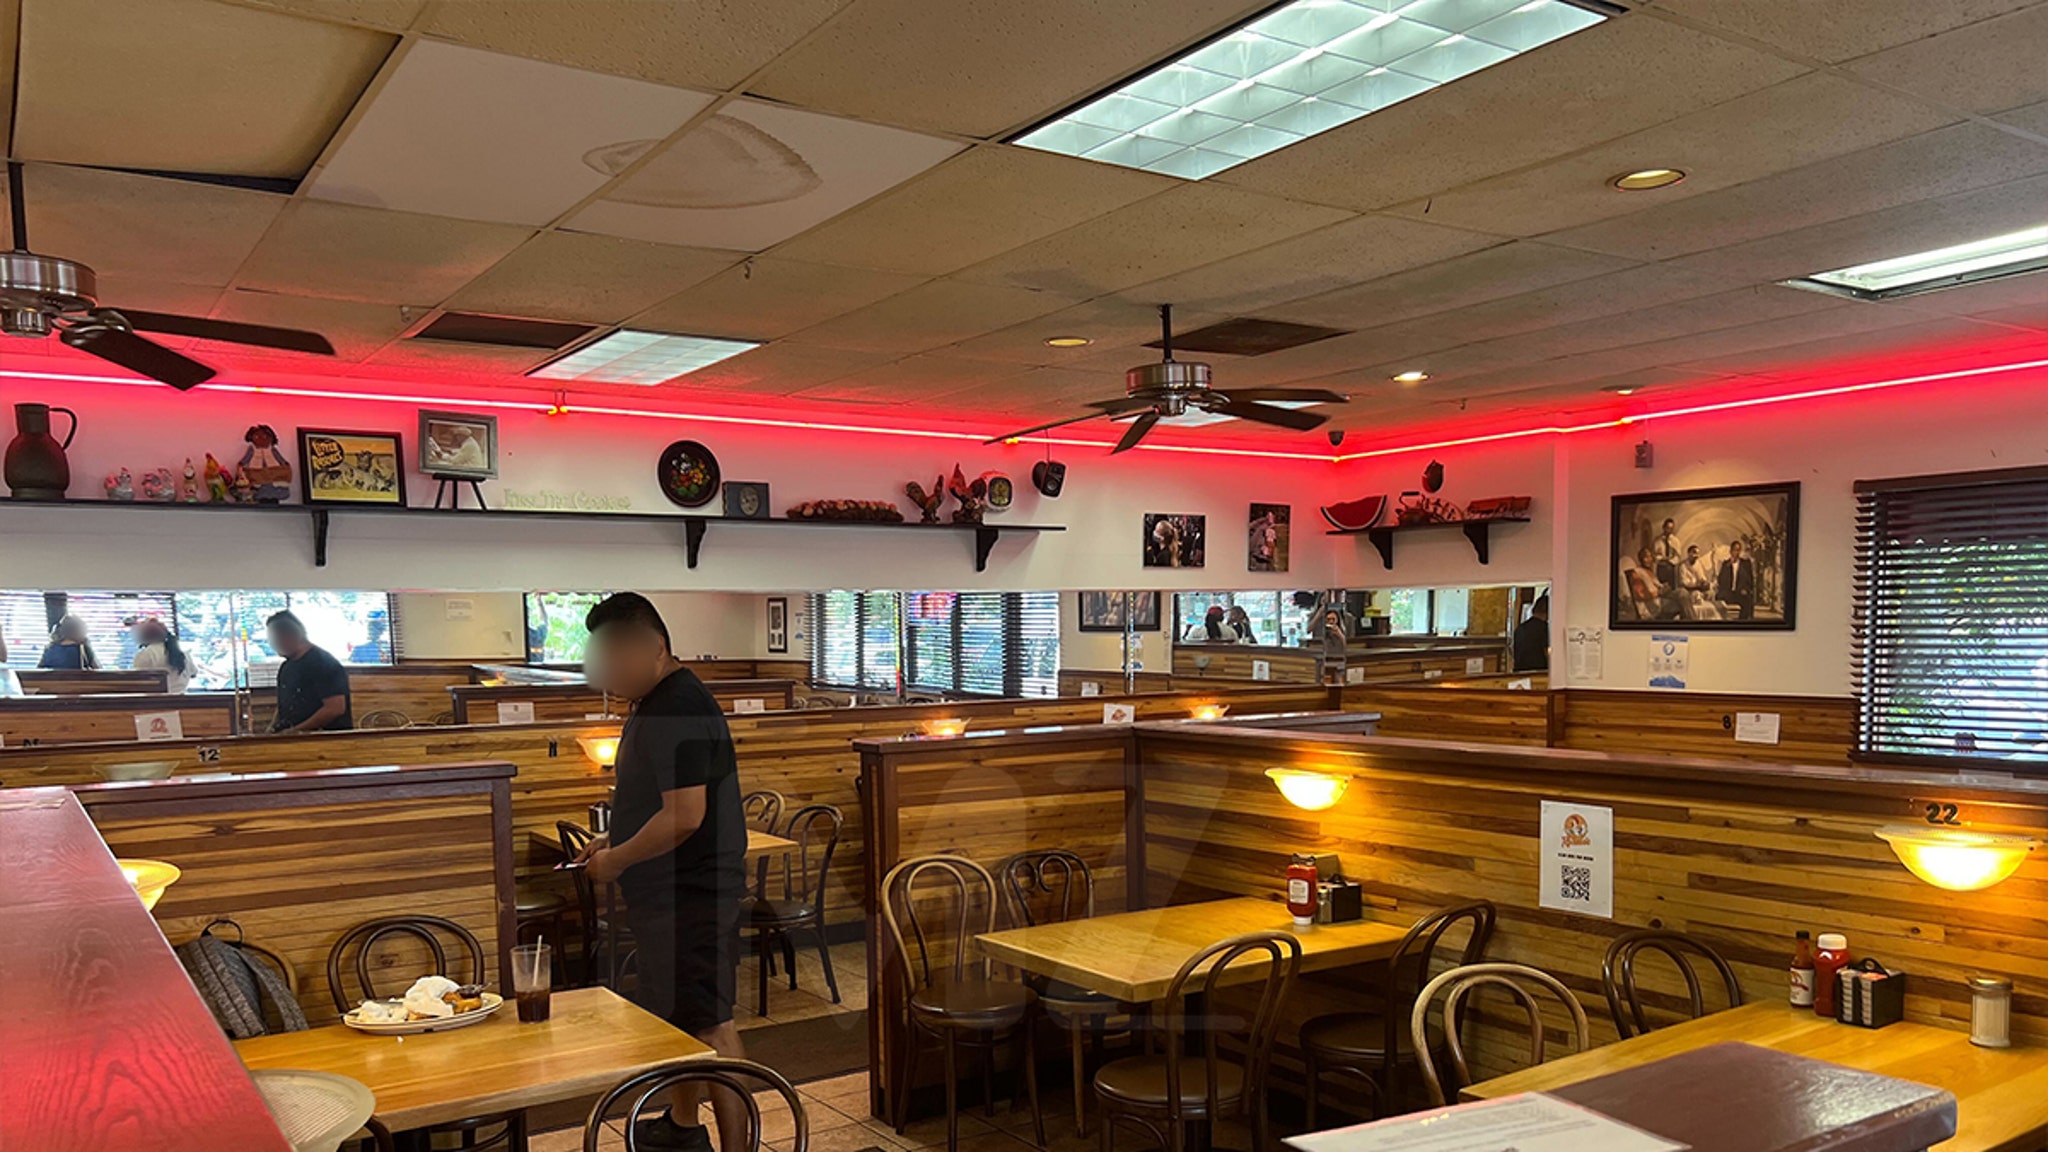 يفتح مطعم Roscoe's Chicken and Waffles بعد 24 ساعة من قتل PnB Rock Murder